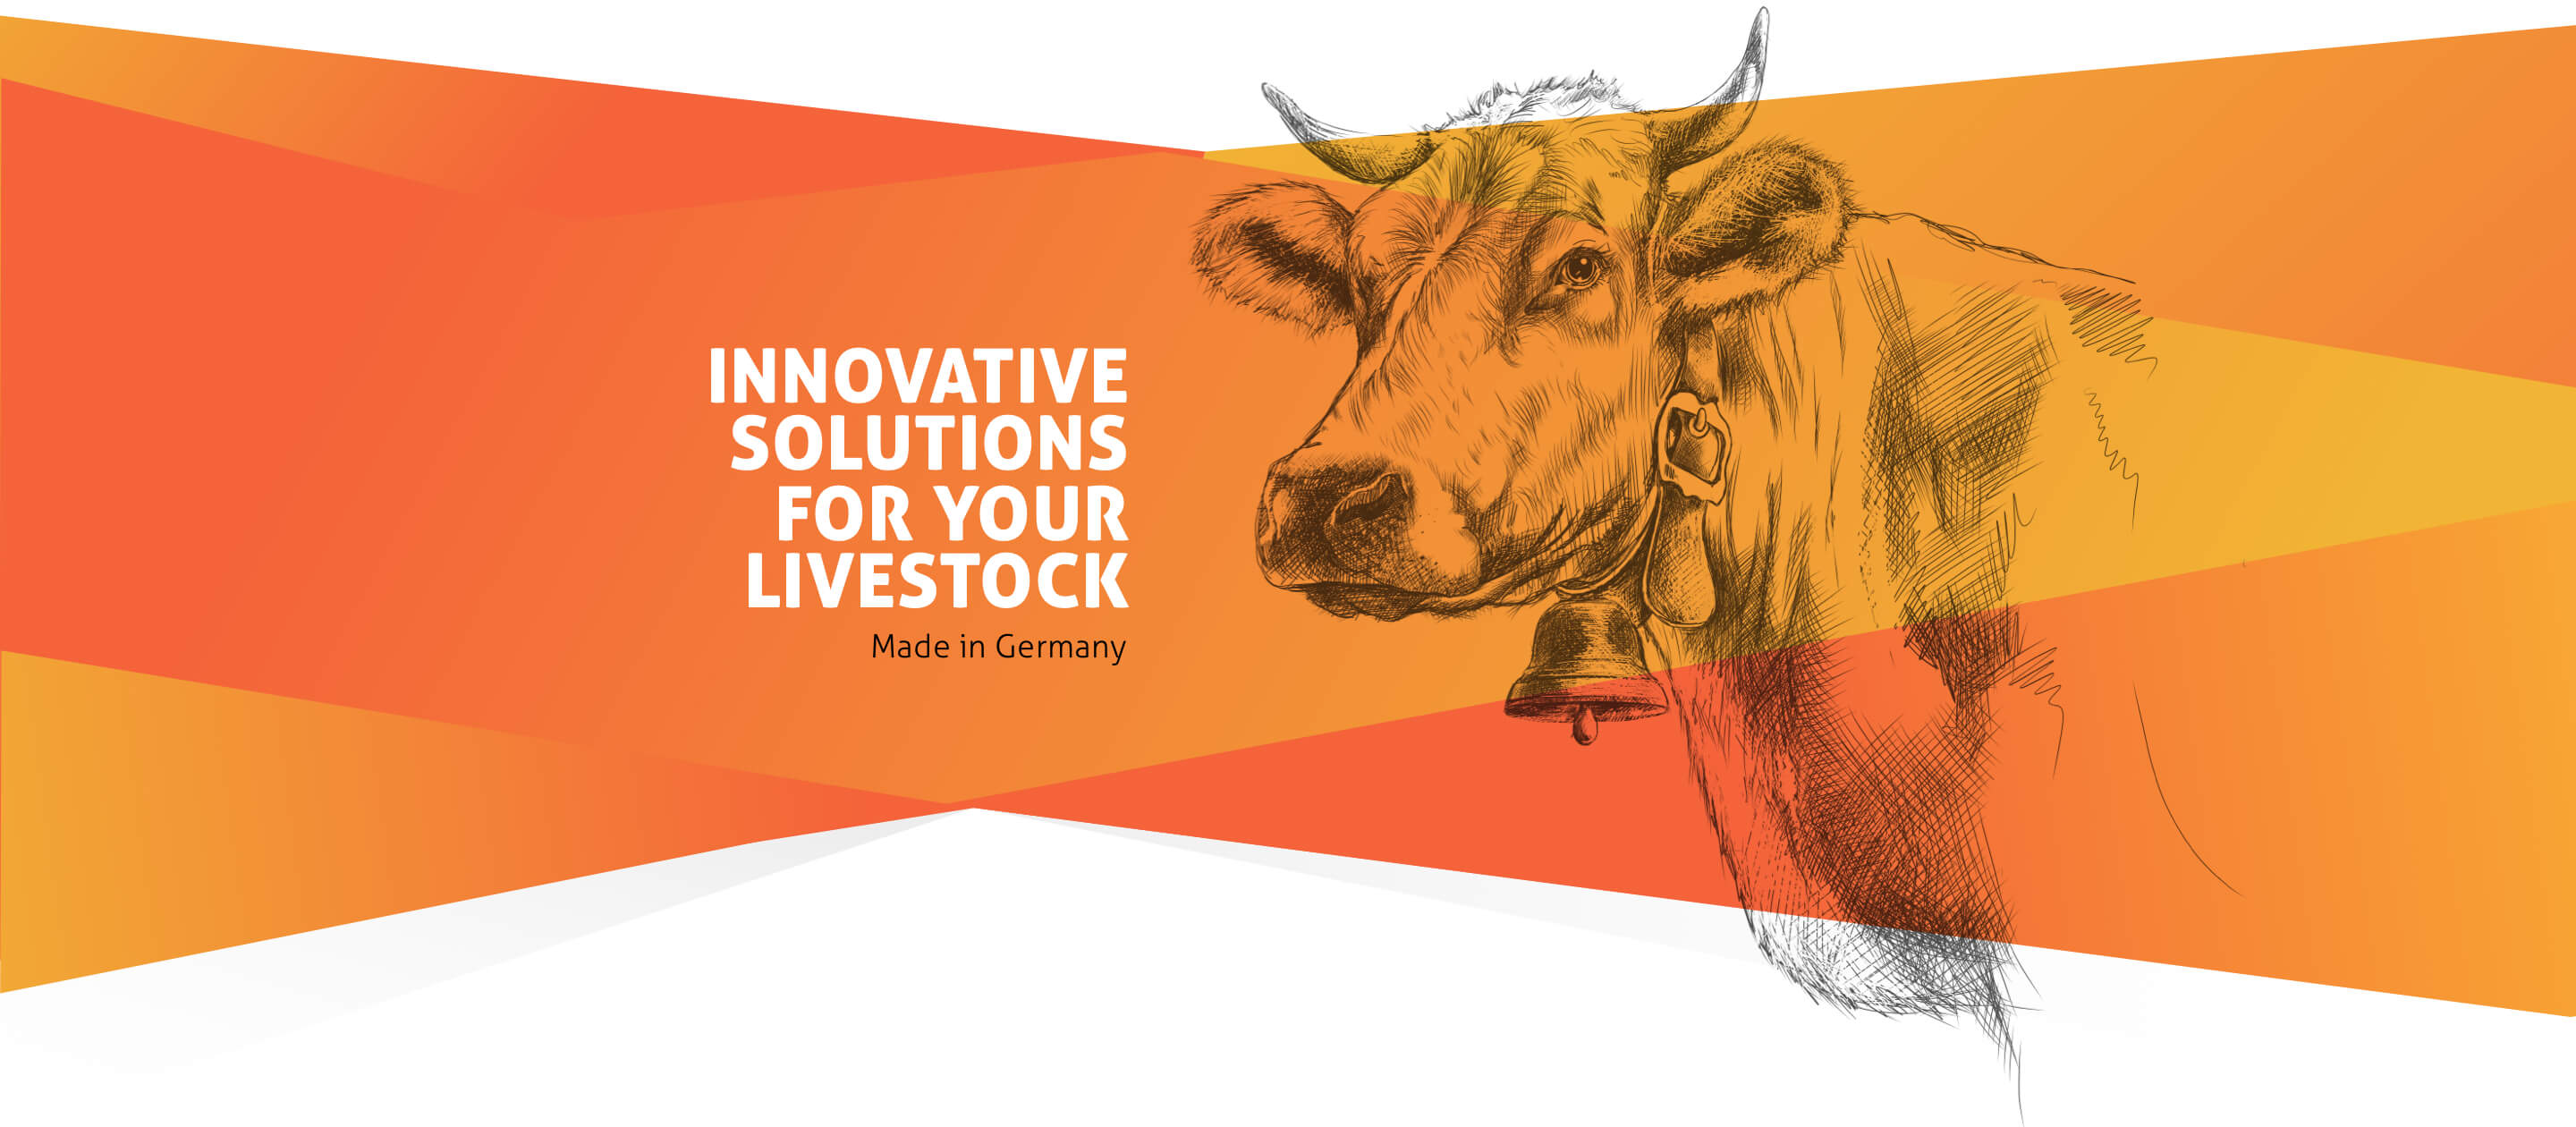 Ein schwarz-weiß gezeichnetes Rind mit Hörnern und einer Glocke um den Hals. Vor dem Rind ist eine Farbfläche platziert, die den englischen Text “Innovative Solutions for your Livestock – made in Germany” enthält.